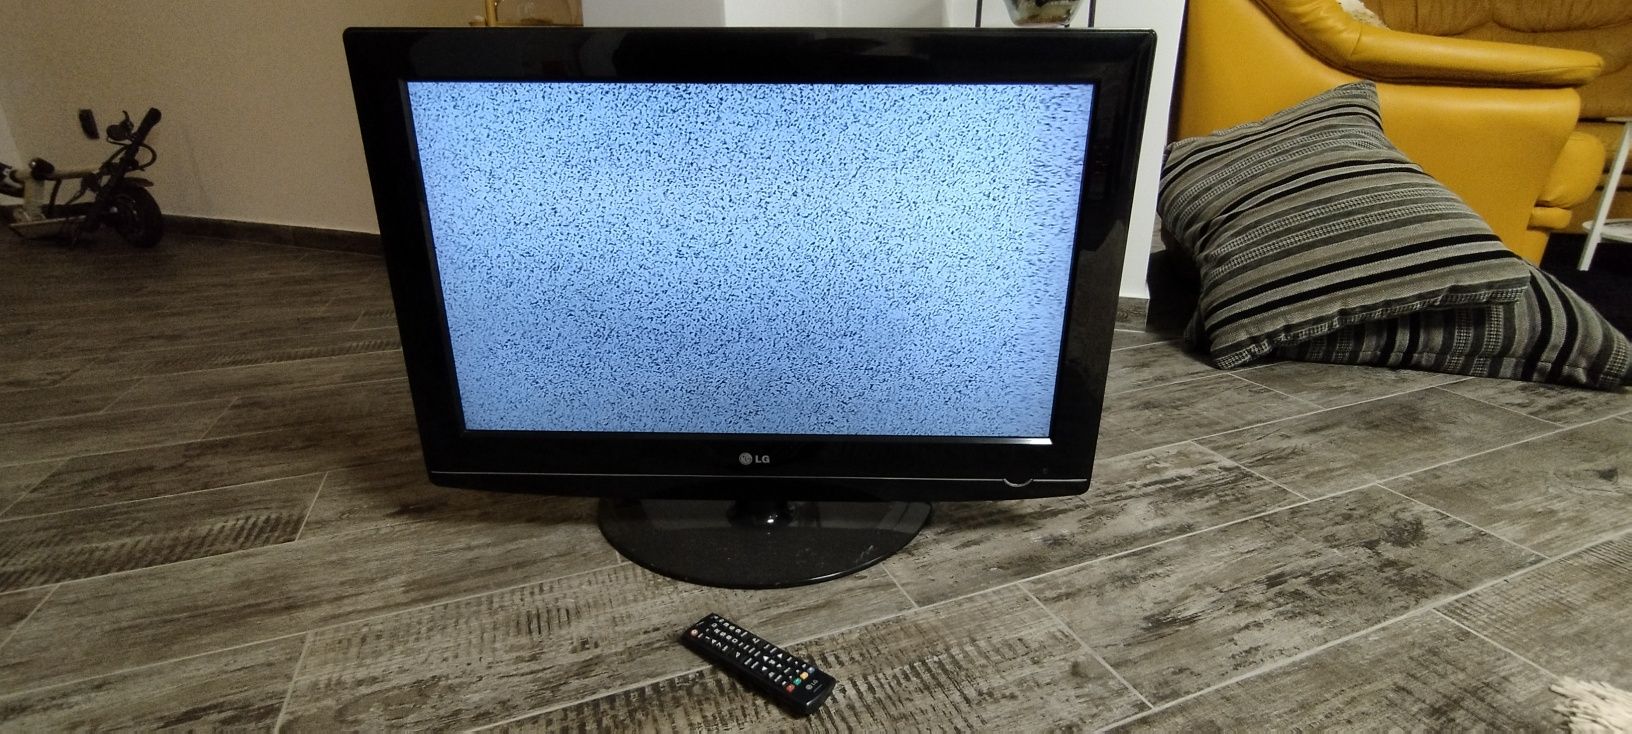 TV LCD lg de 80 cm ,funcționează ok și telecomanda